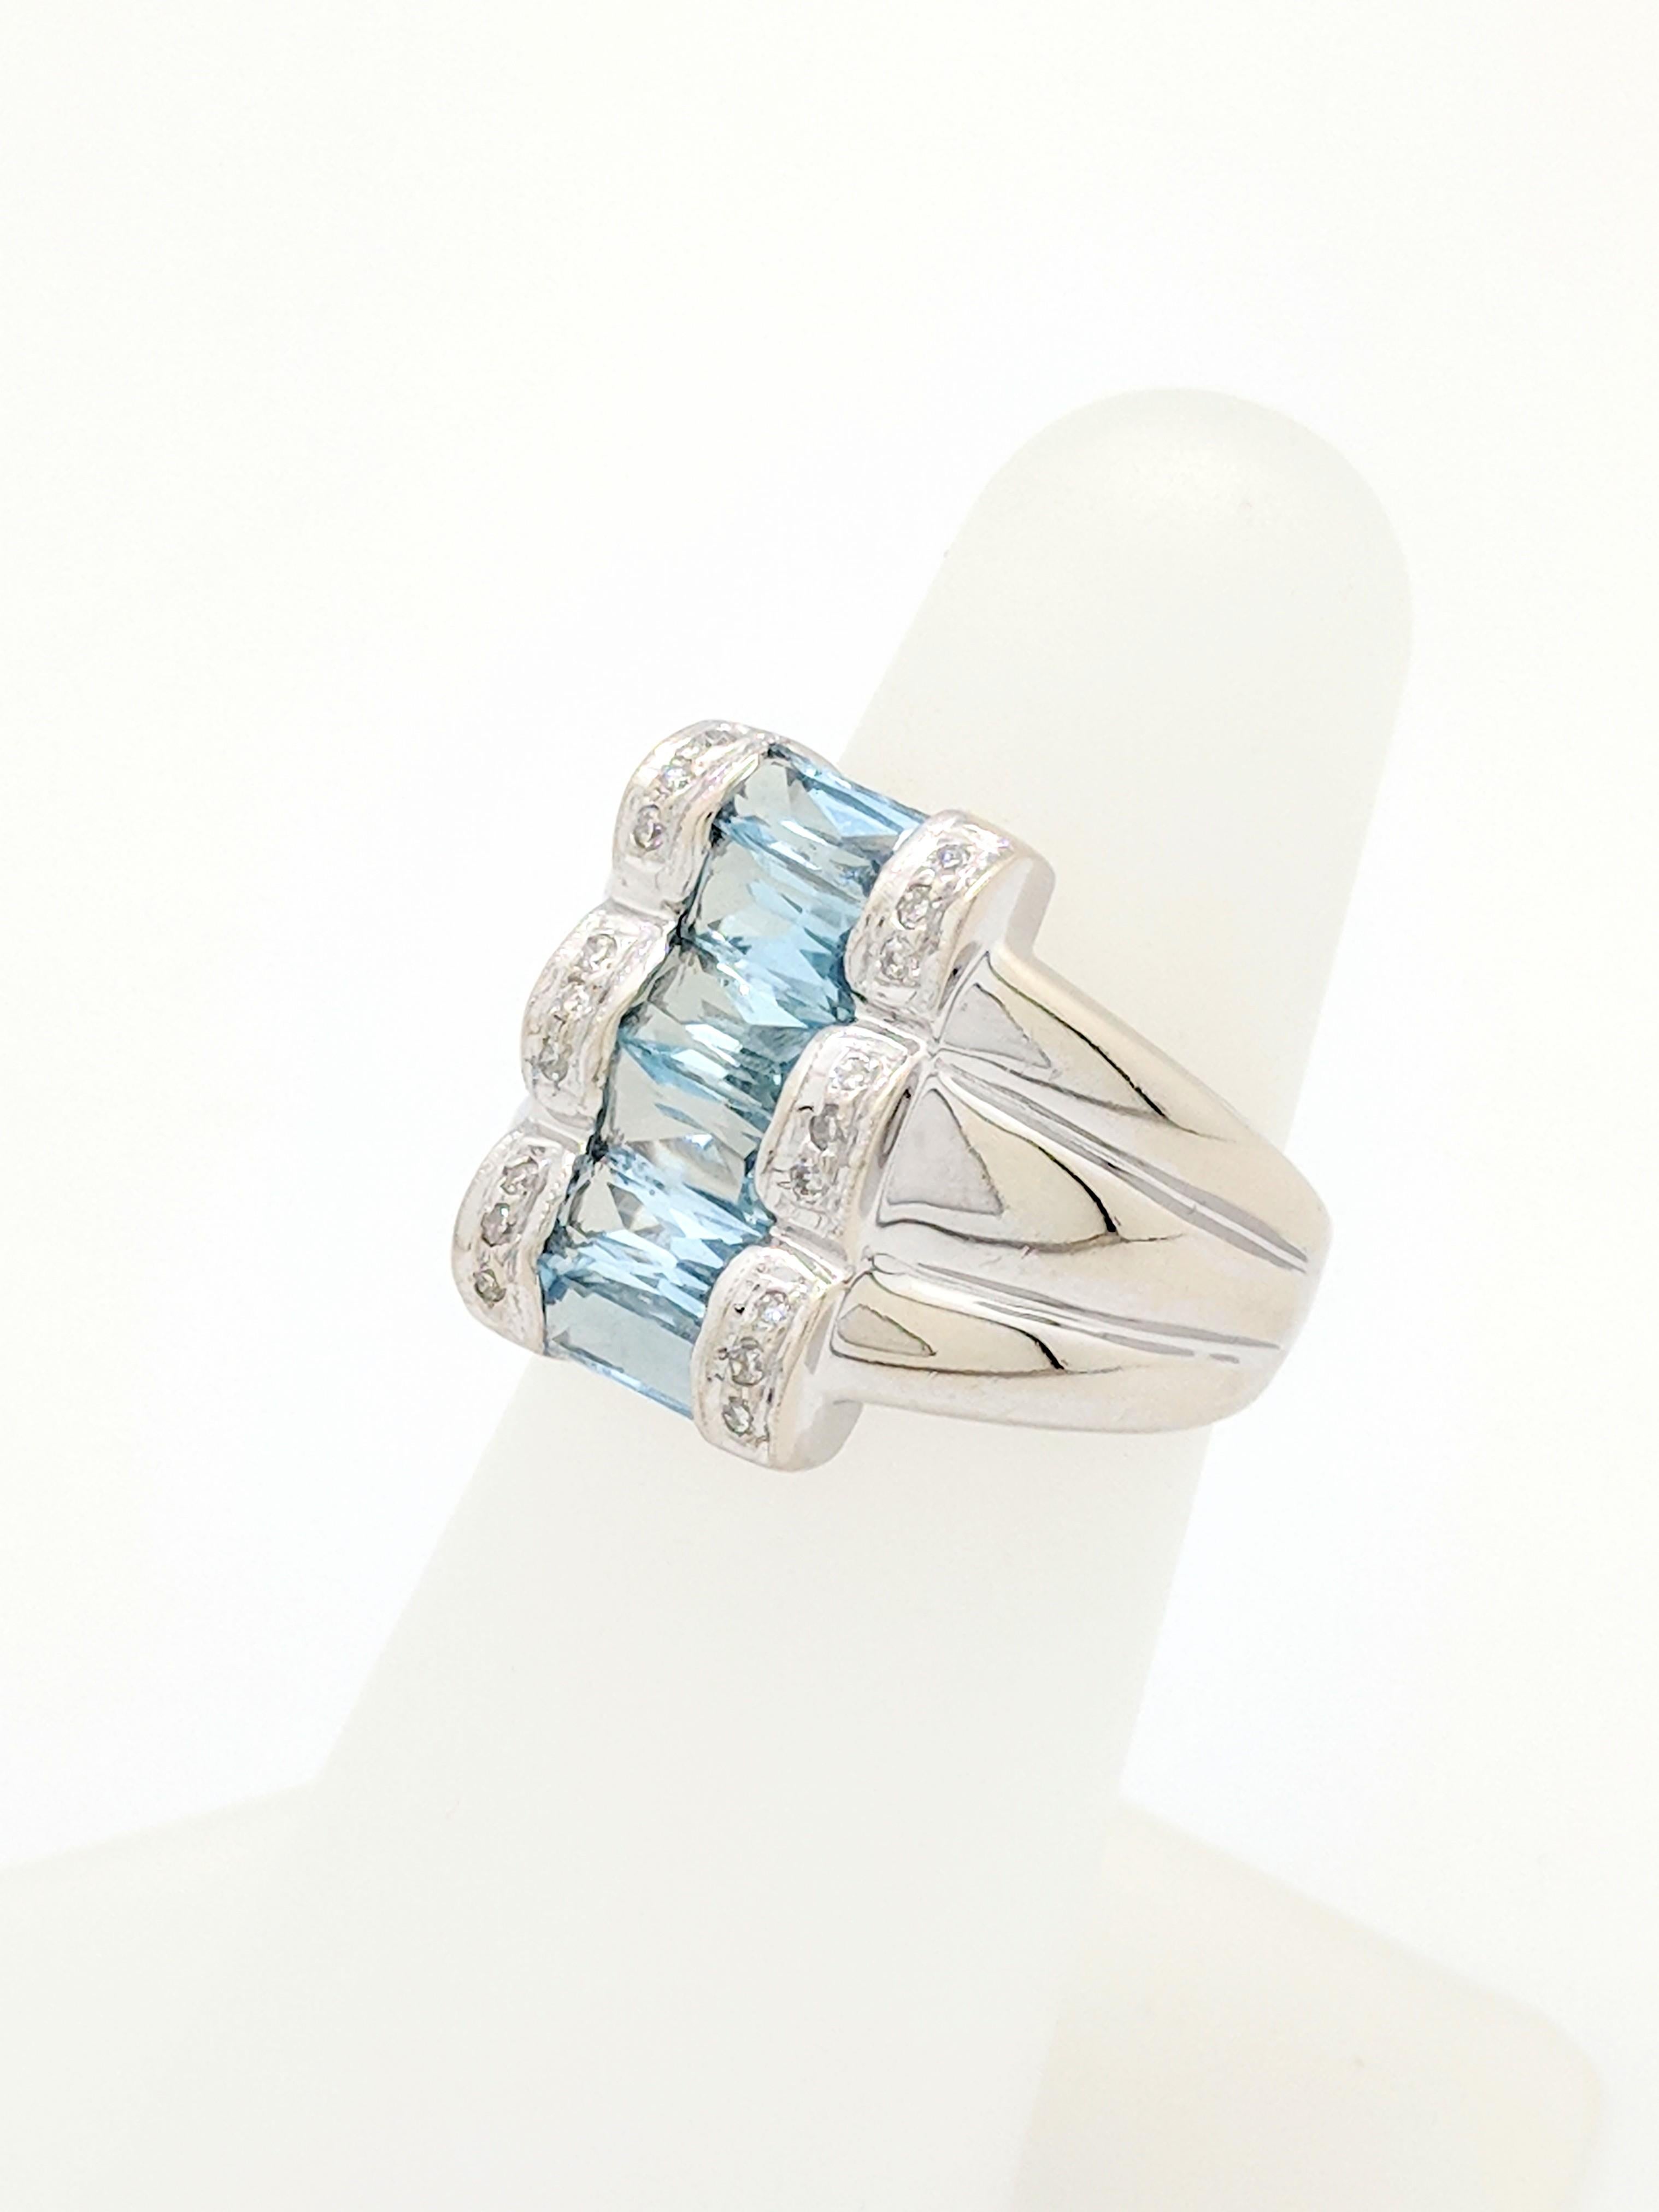 14 Karat White Gold Aquamarine and Diamond Ring 5